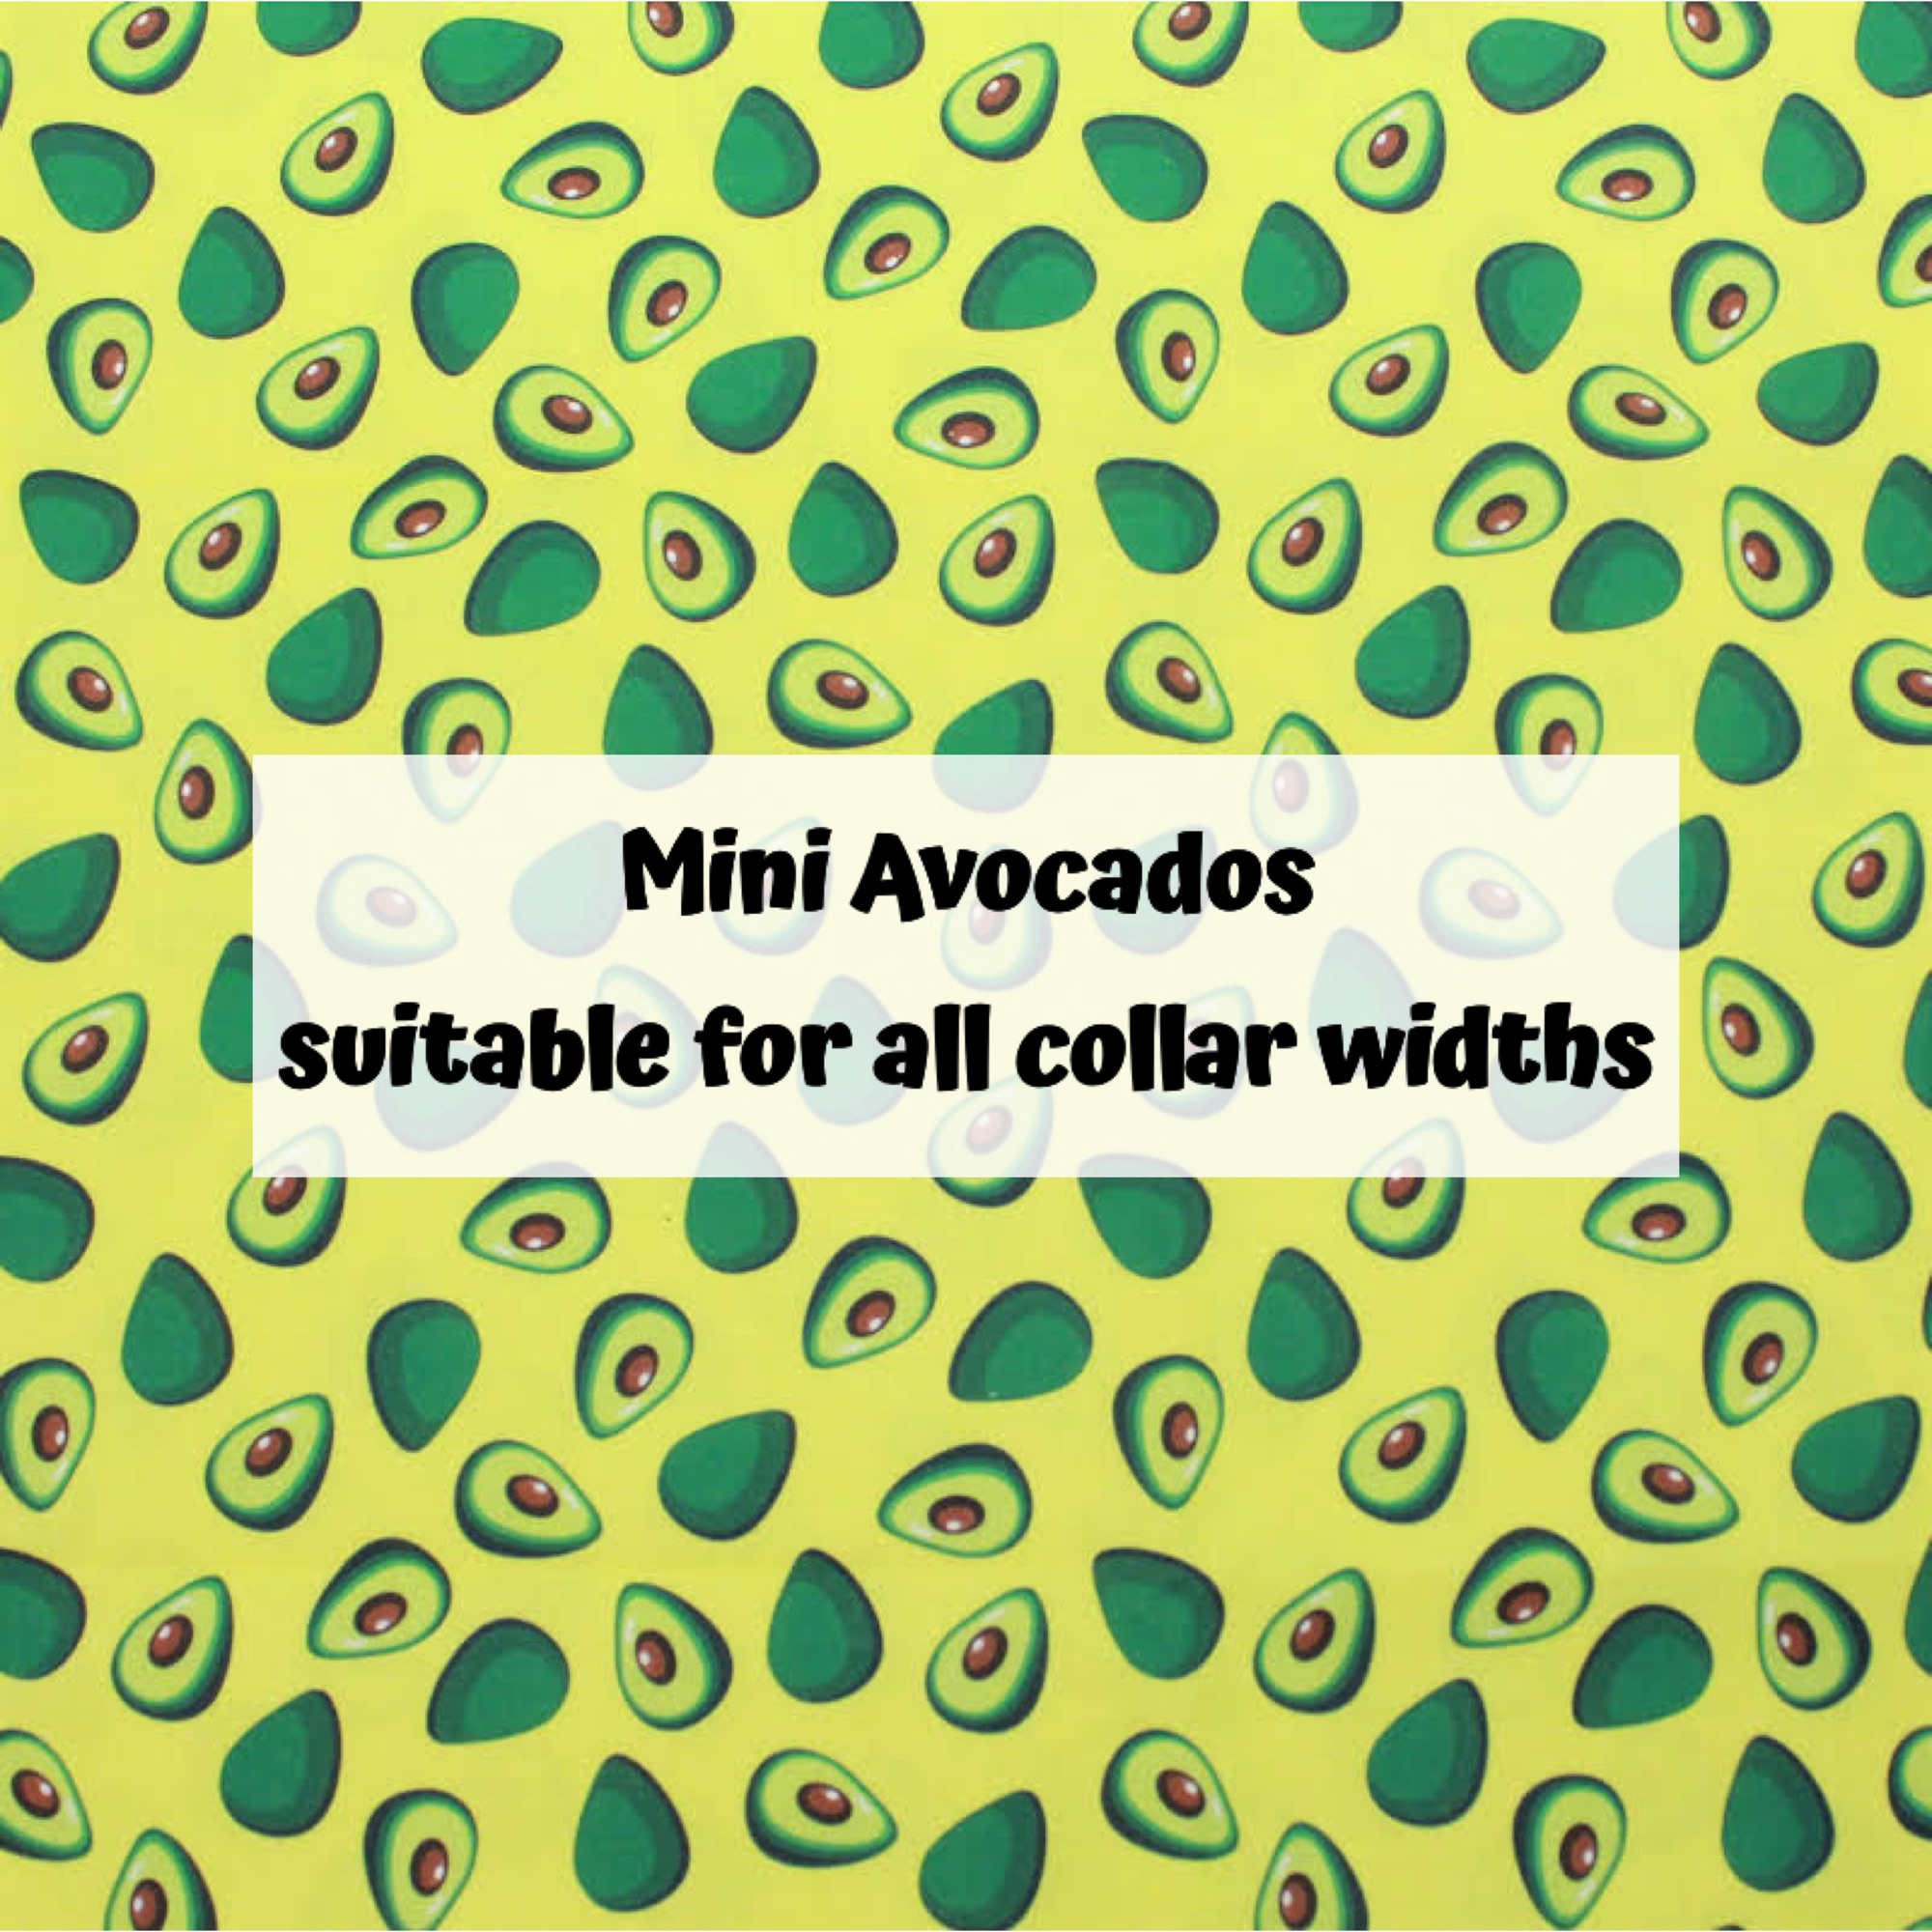 Mini Avocados